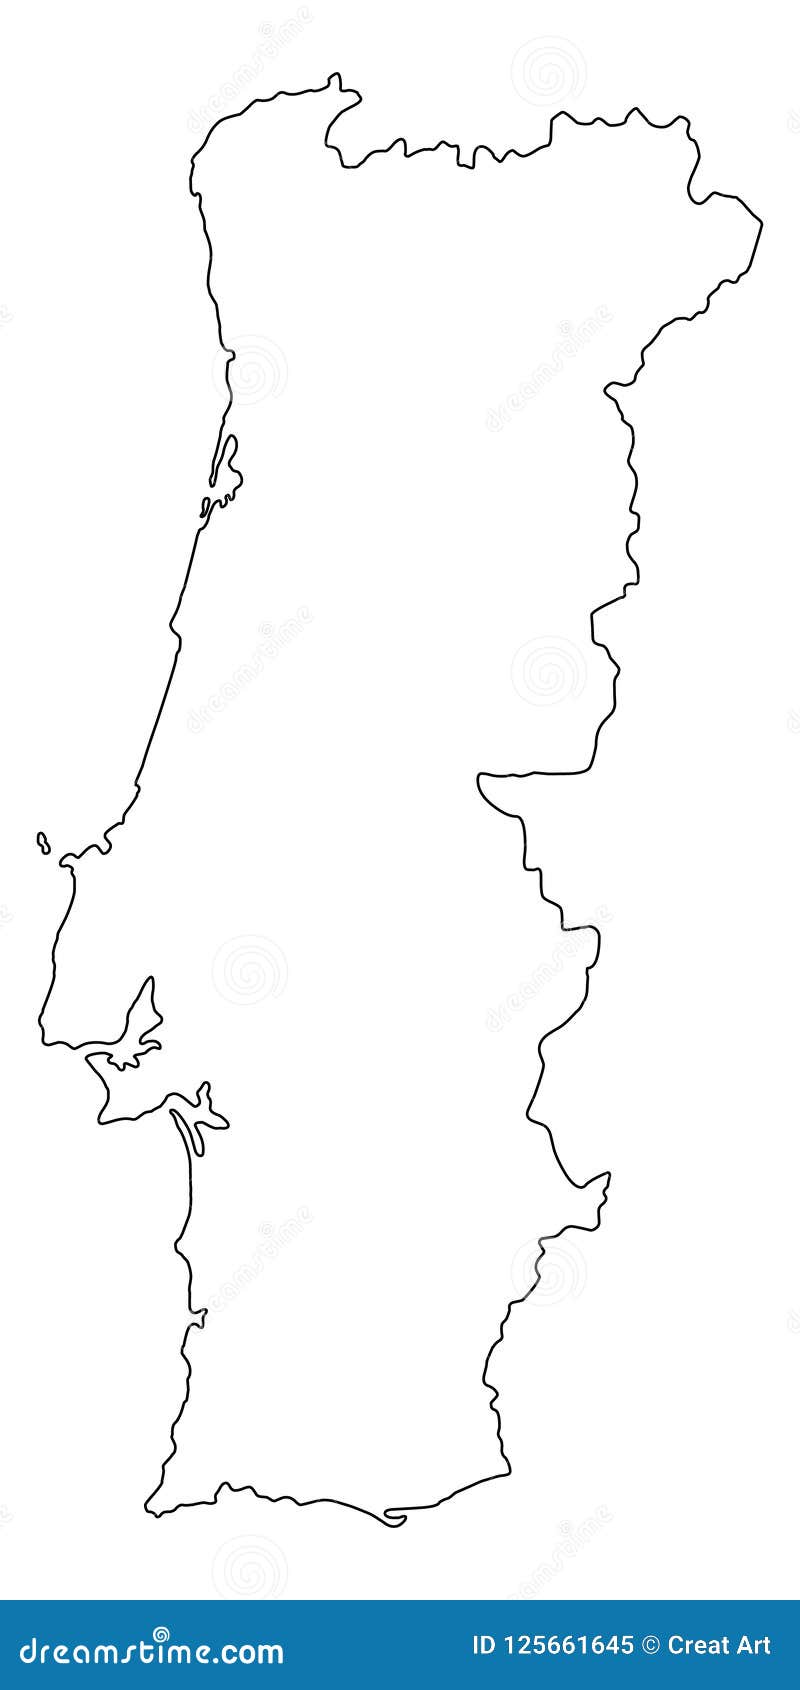 Esboço do mapa de Portugal (distritos em camadas separadas ) vetor